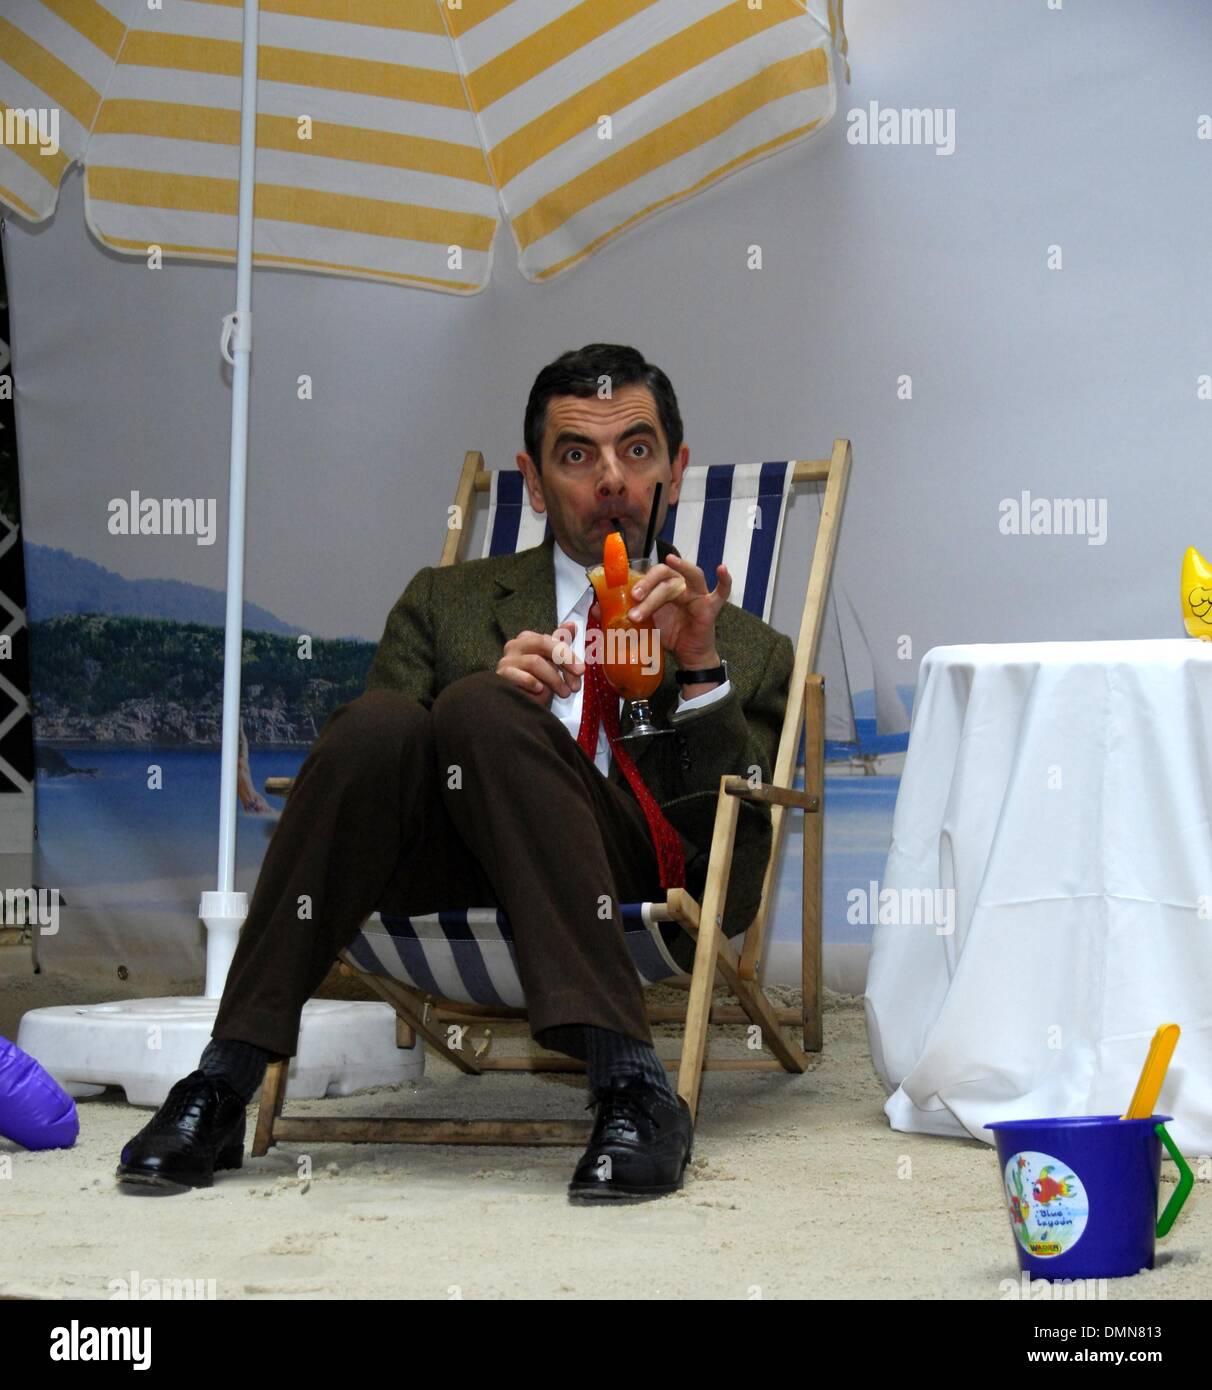 Rowan Atkinson bei Photocall von seinem neuen Mr. Bean film "Mr. Bean macht Ferien" in Berlin. Stockfoto